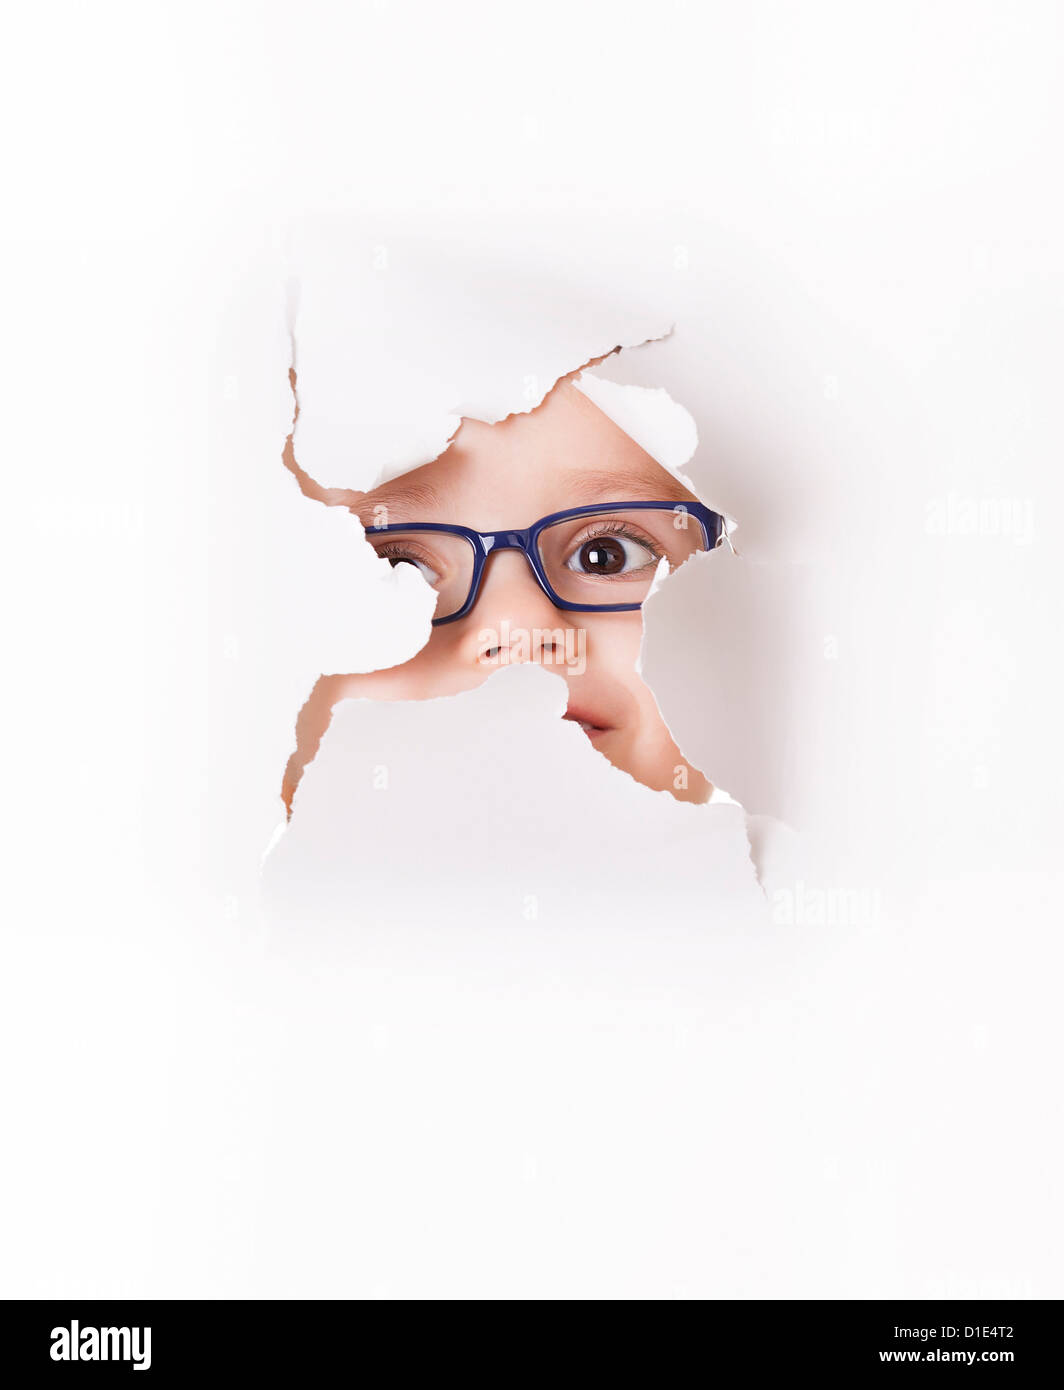 Neugierige Kind in Brille schaut durch ein Loch im Weißbuch Stockfotografie  - Alamy